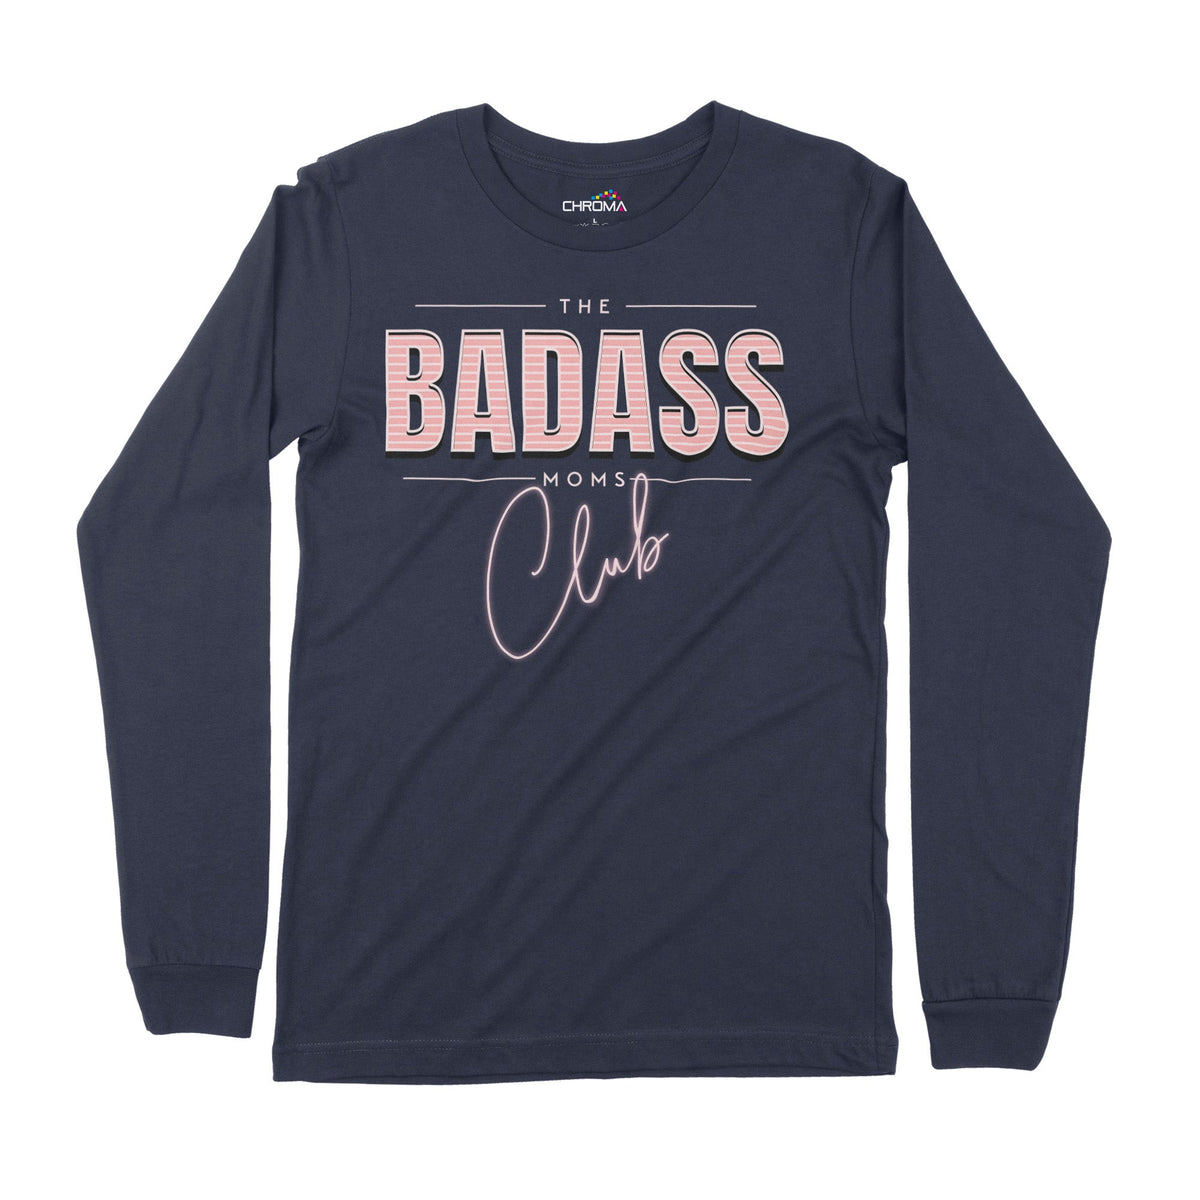 The Badass Mom's Club | Long-Sleeve T-Shirt | Premium Quality Streetwe Chroma Clothing